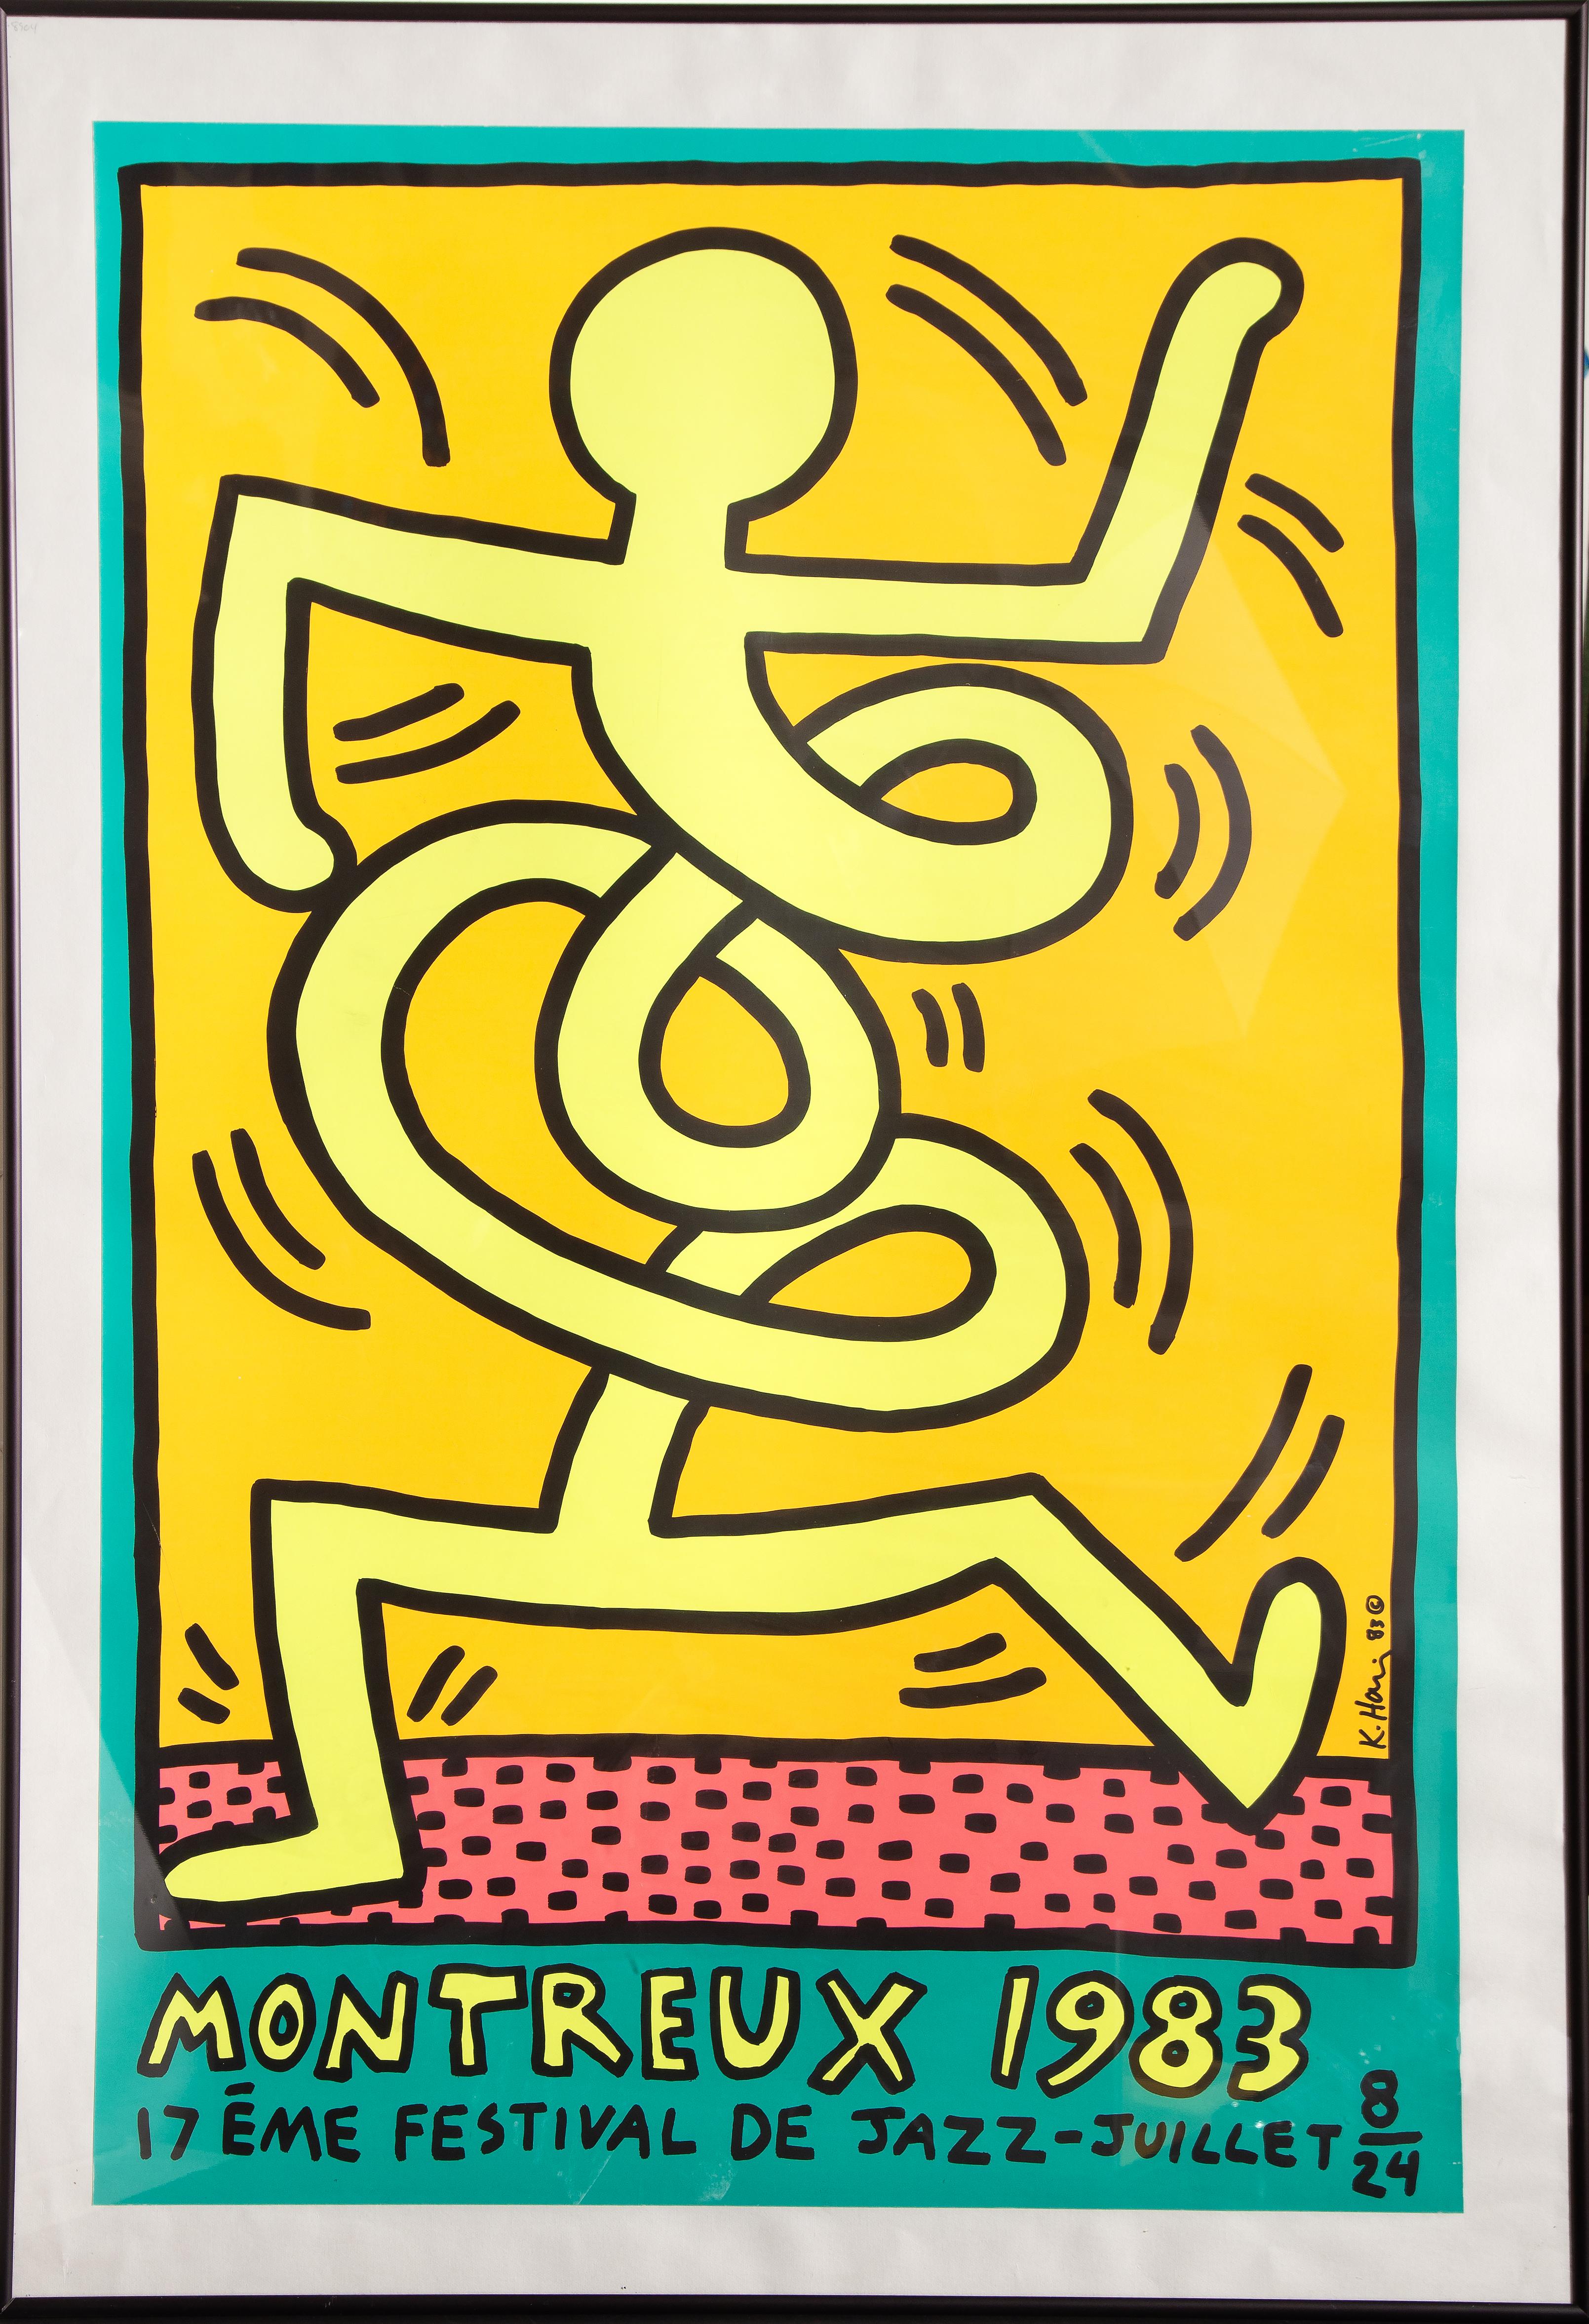 Affiche du 17e festival de jazz de Montreux en 1983. L'affiche a été conçue par l'artiste pop américain Keith Haring pour le festival. L'œuvre est signée et datée dans la plaque et joliment encadrée.

Montreux 1983
Keith Haring, Américain